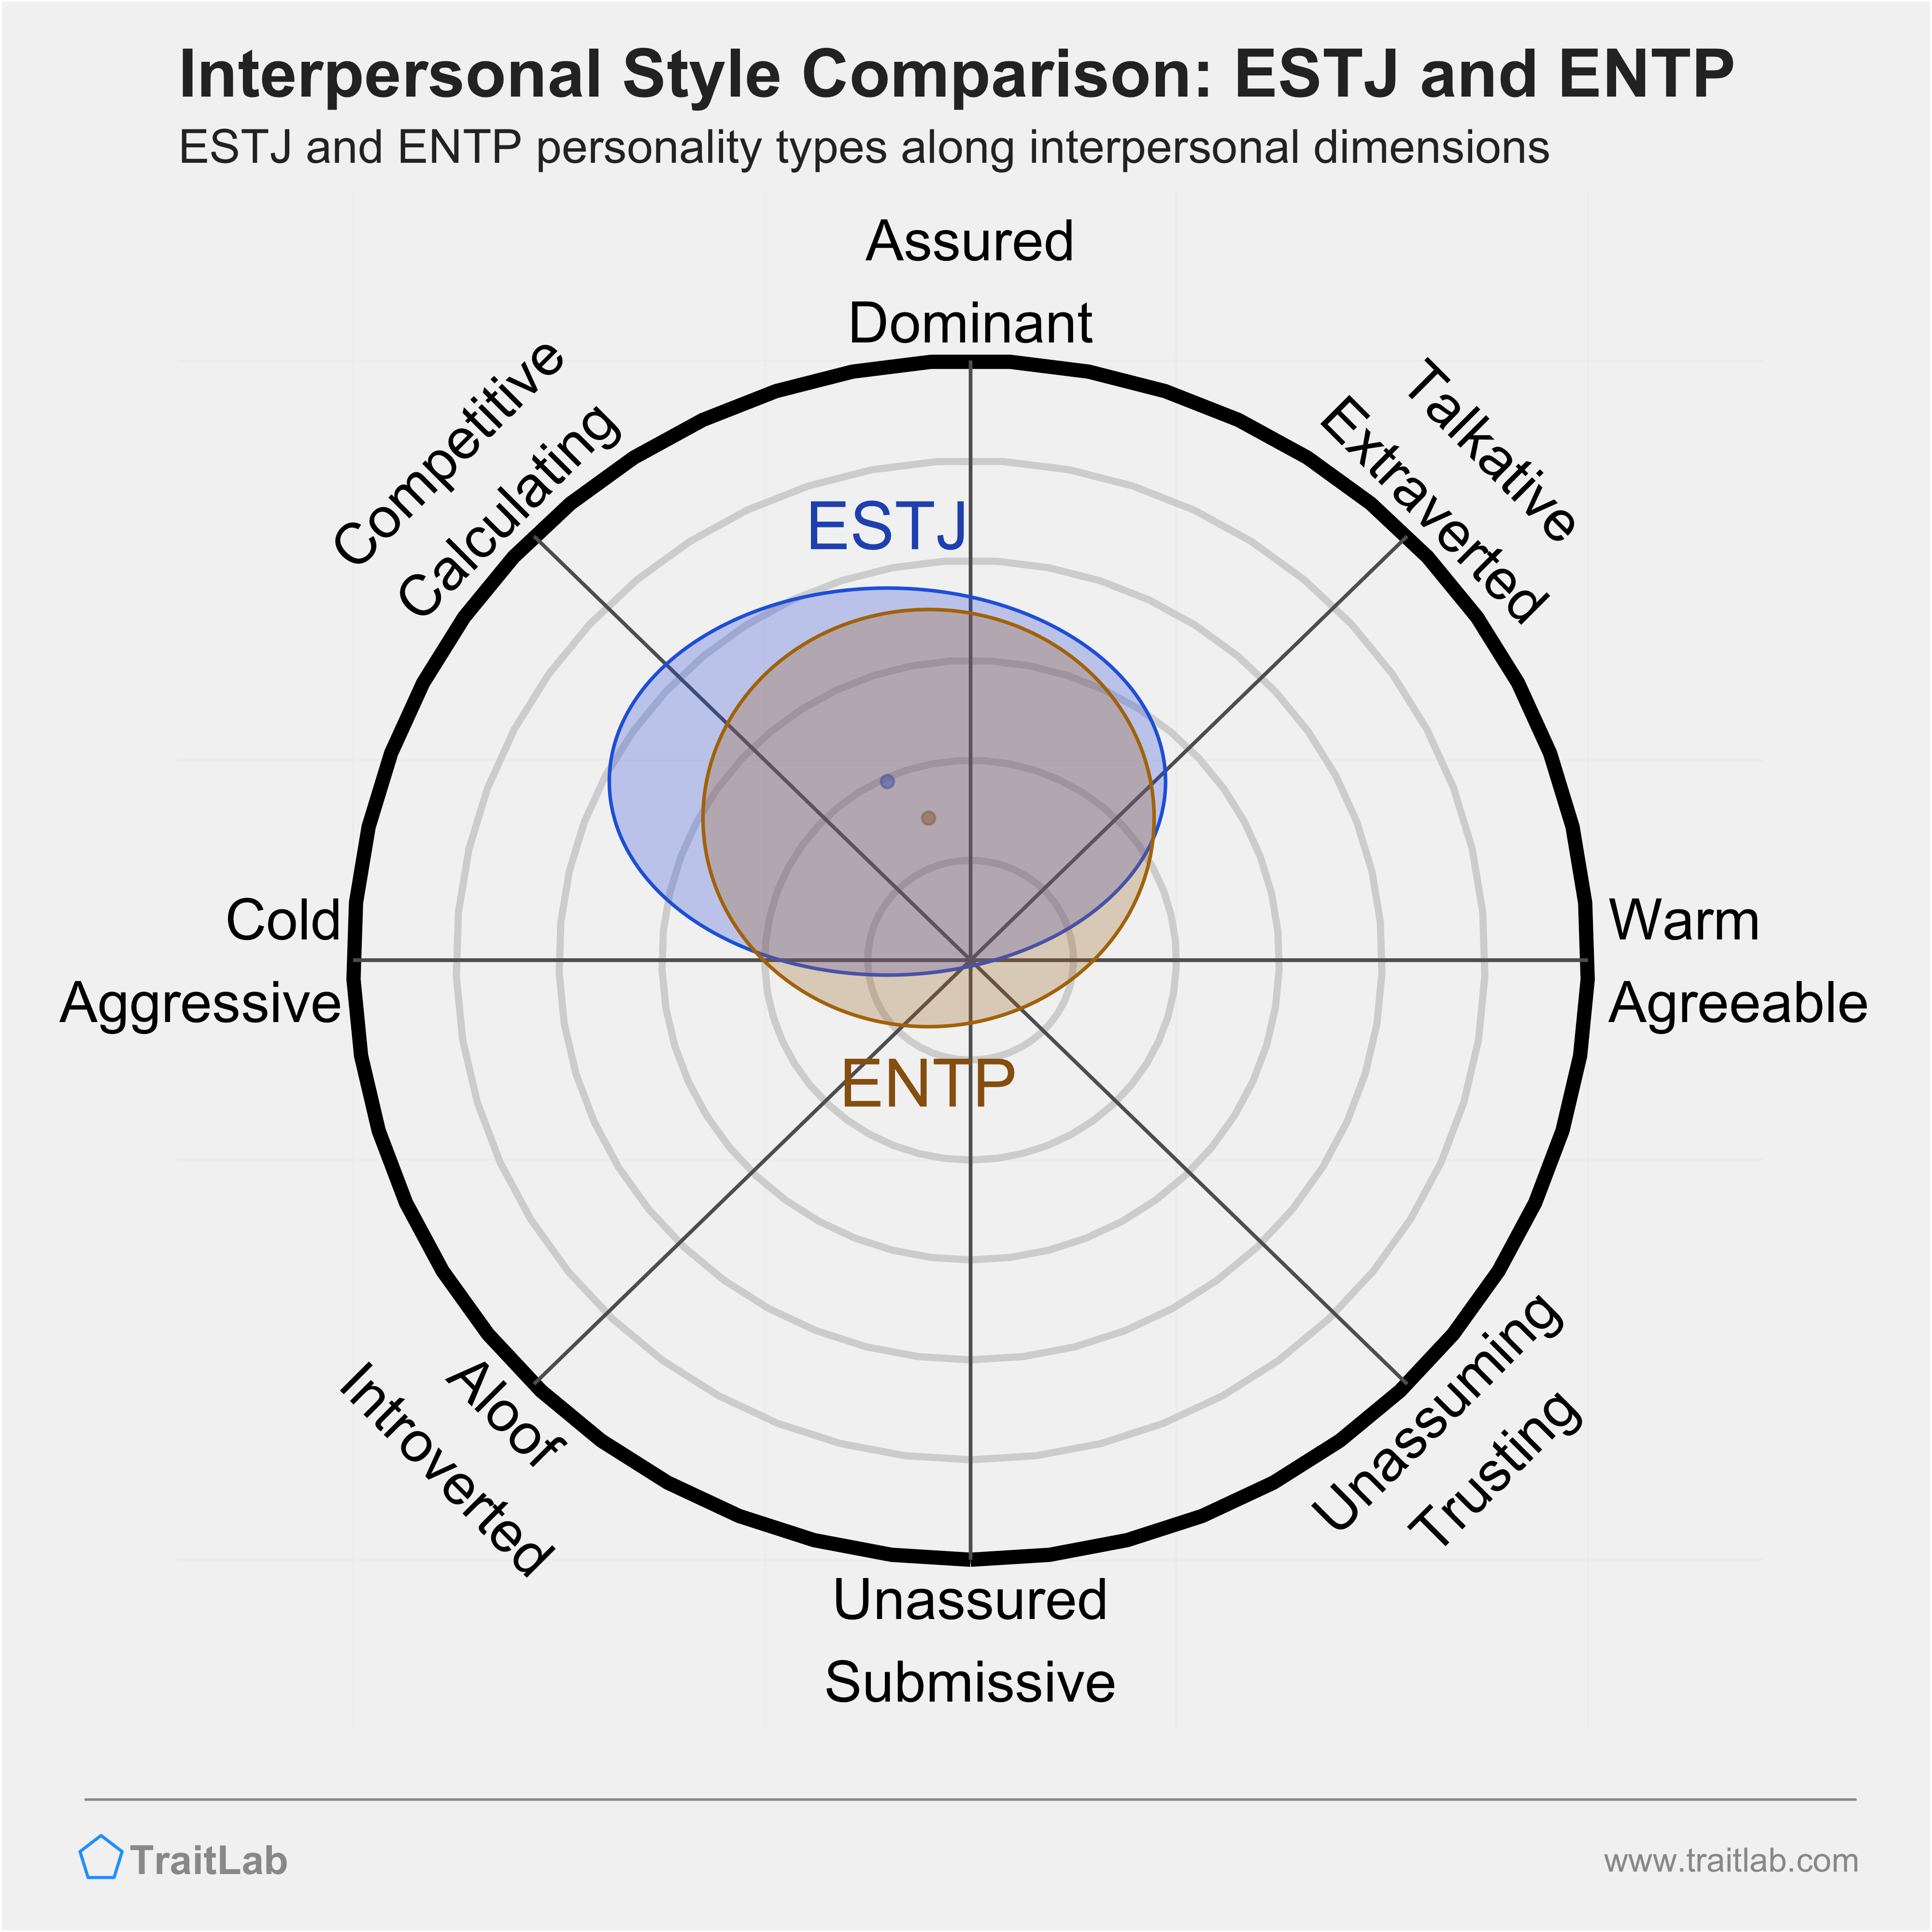 ESTJ and ENTP comparison across interpersonal dimensions